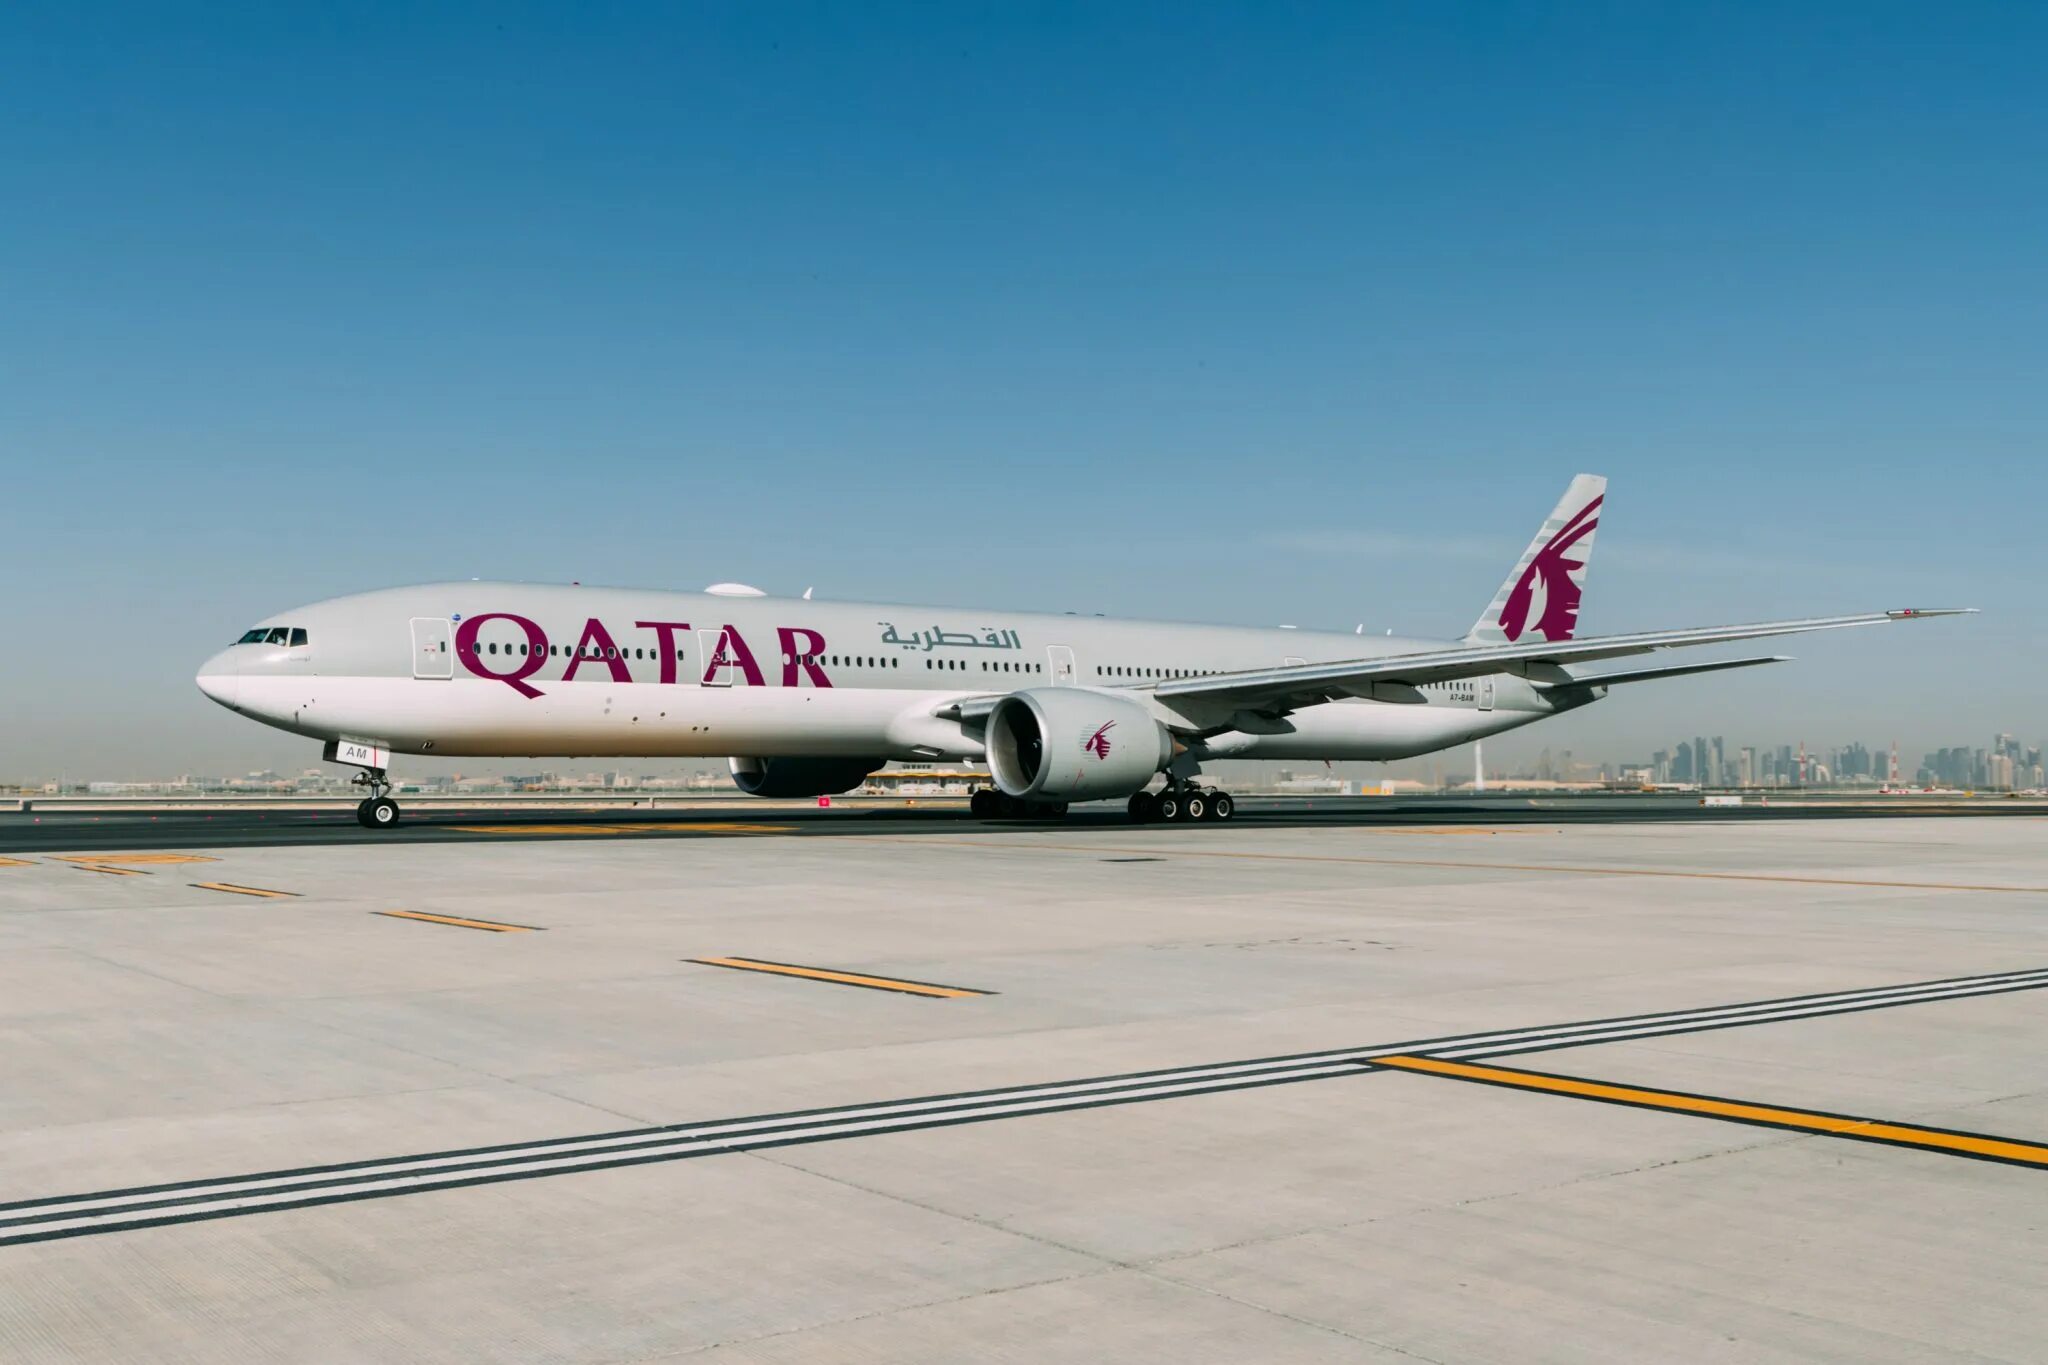 Катар дав. Авиакомпания Катар Эйрлайнс. Самолет Катар Эйрвейз. Катар авиалинии самолеты. Qatar самолеты Doha.